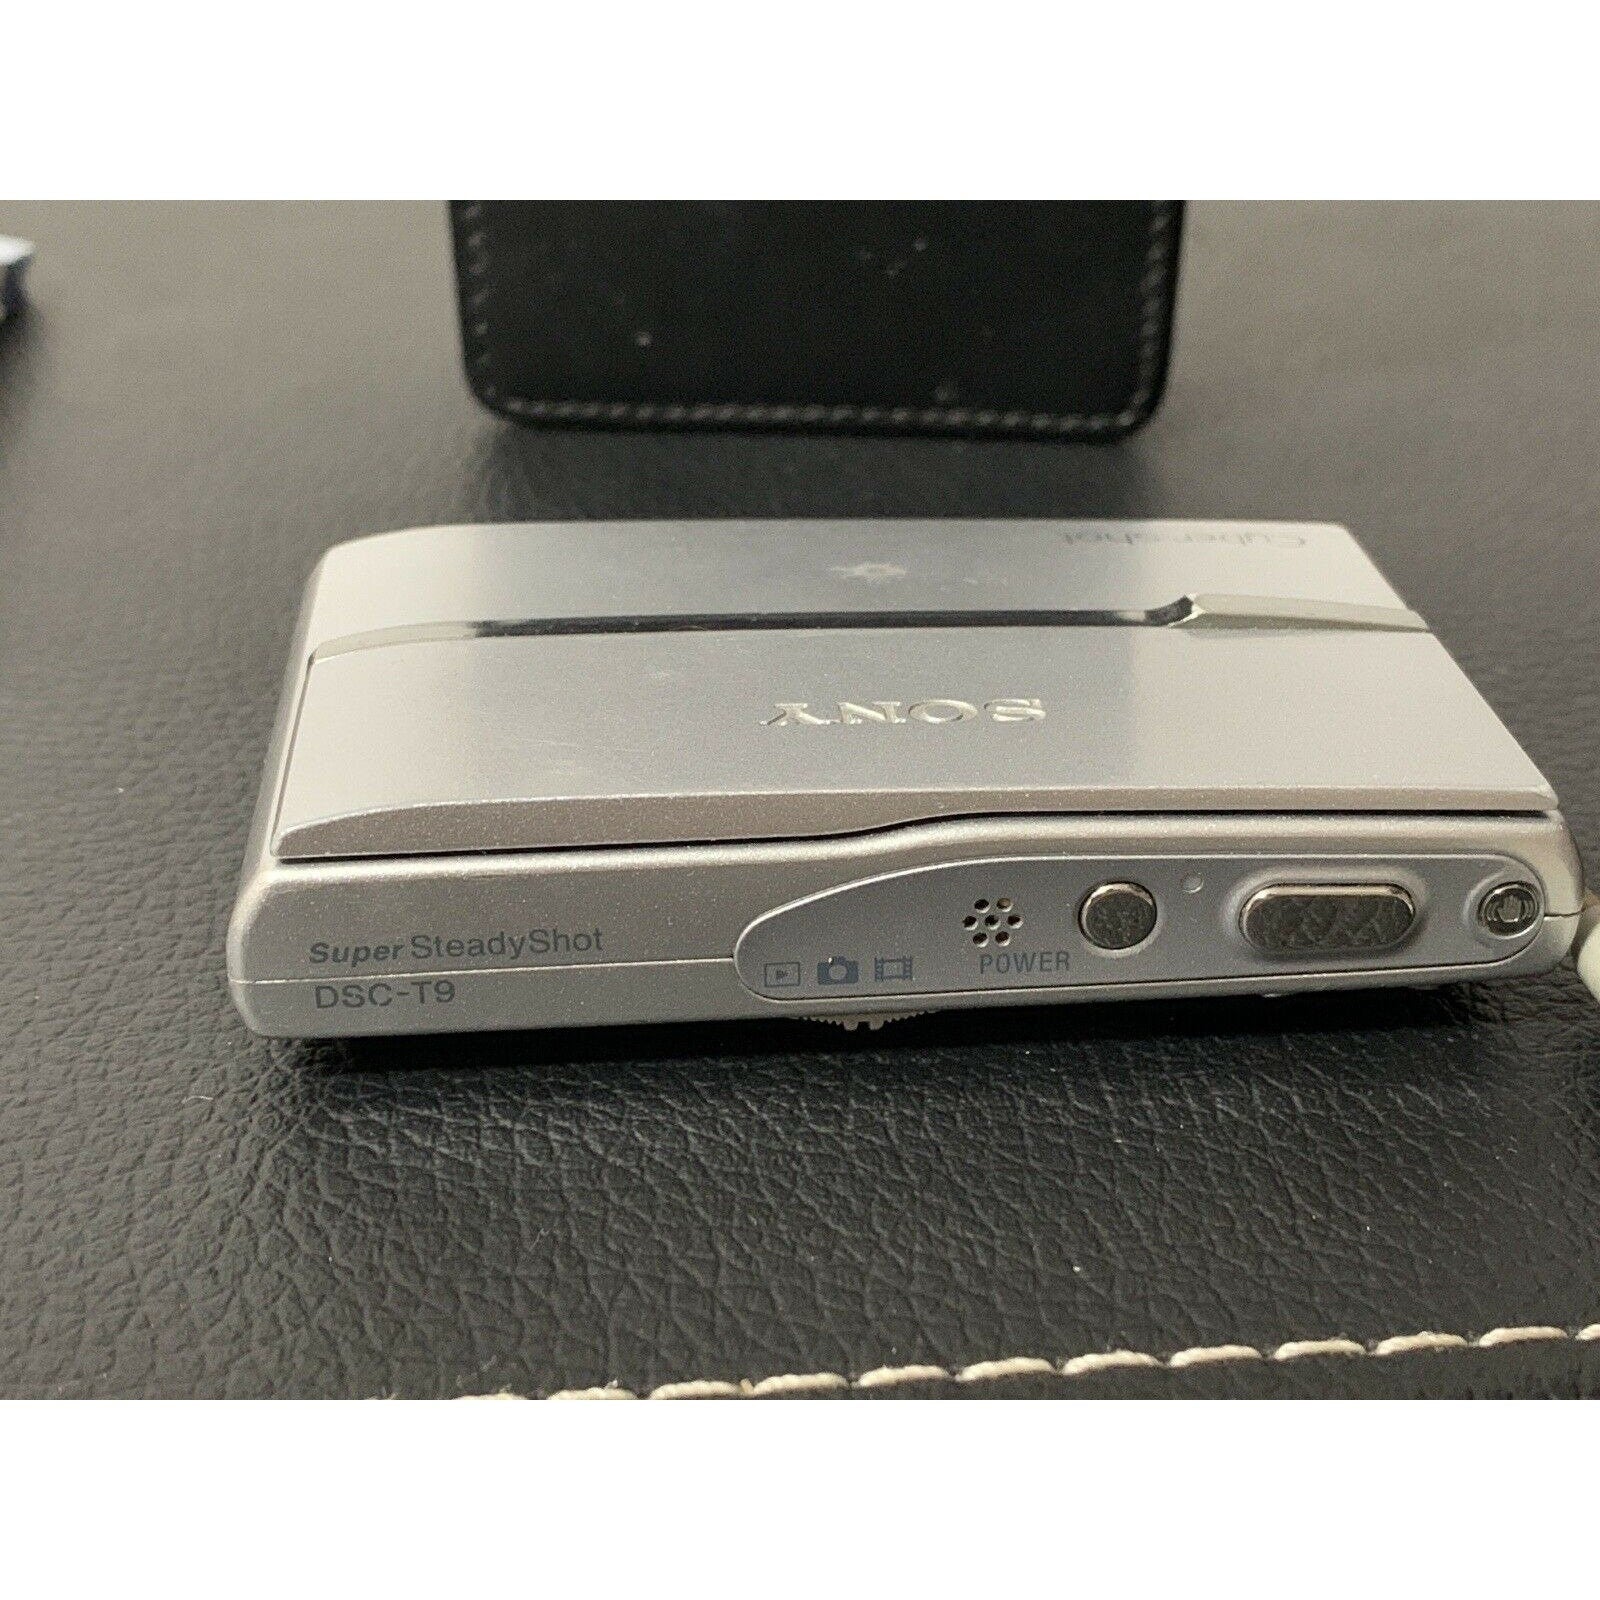 Sony Cyber-shot DSC-T9 6.0MP Digital Camera - Silver